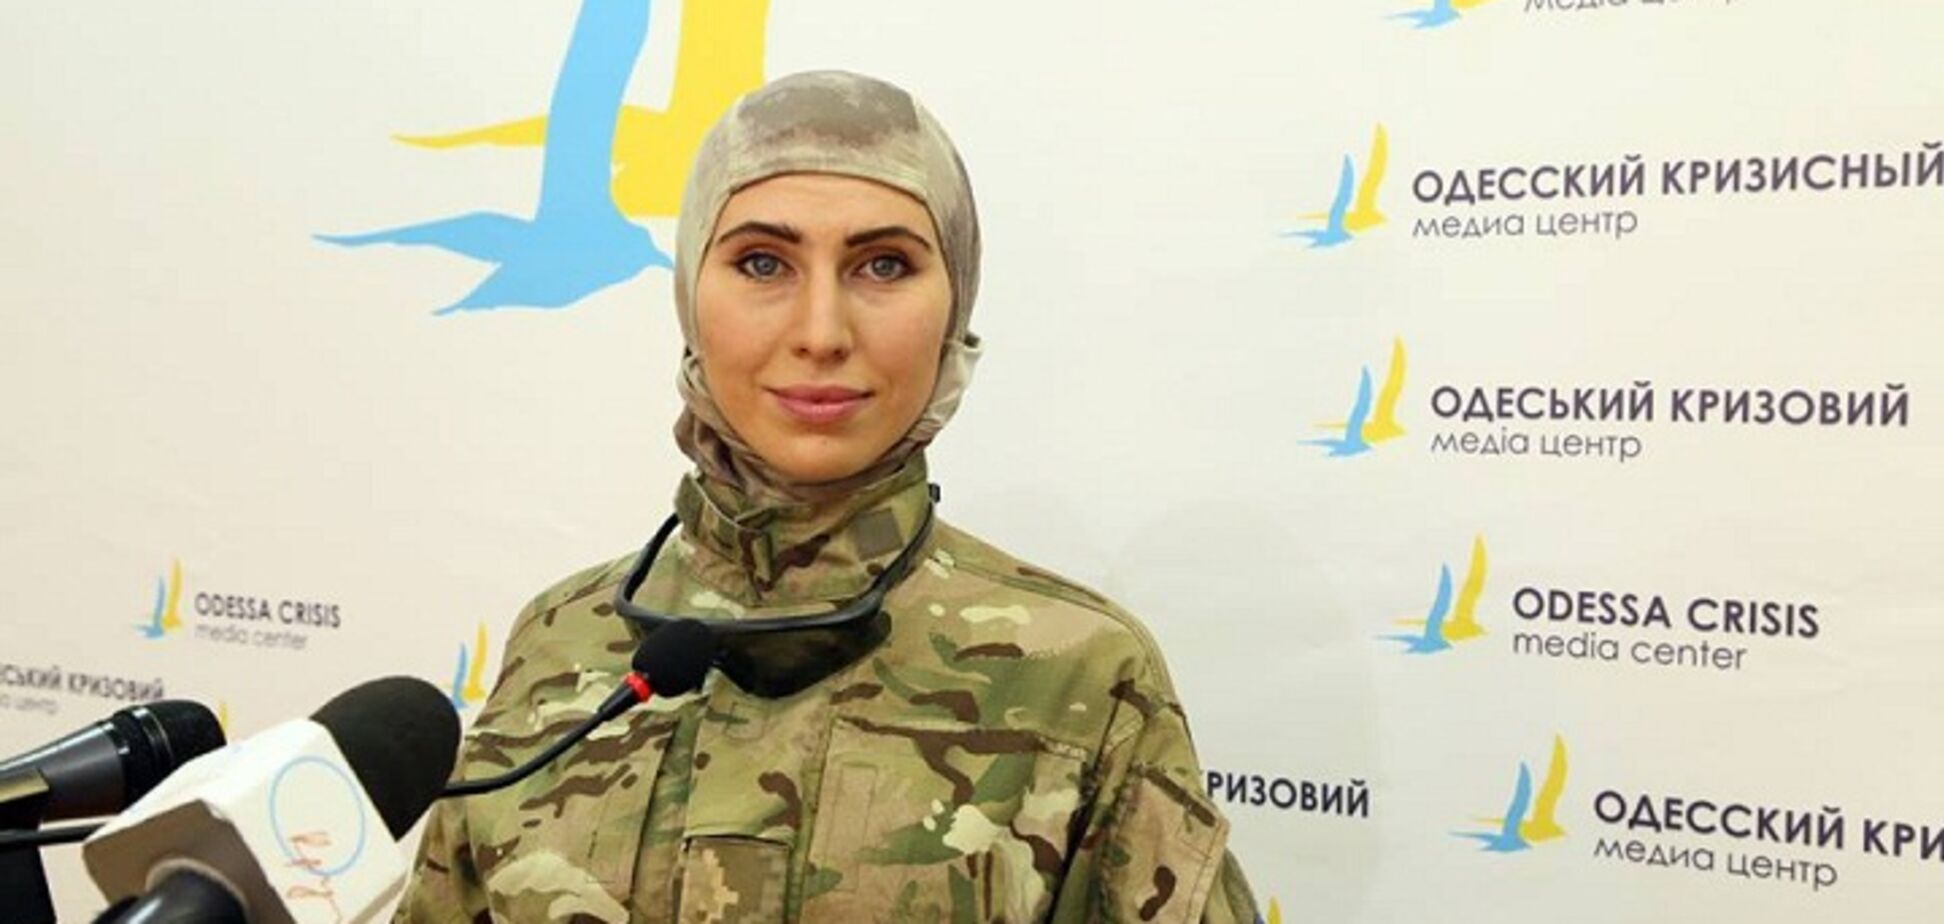 'Ангел со снайперской подготовкой': в соцсети отреагировали на убийство Амины Окуевой